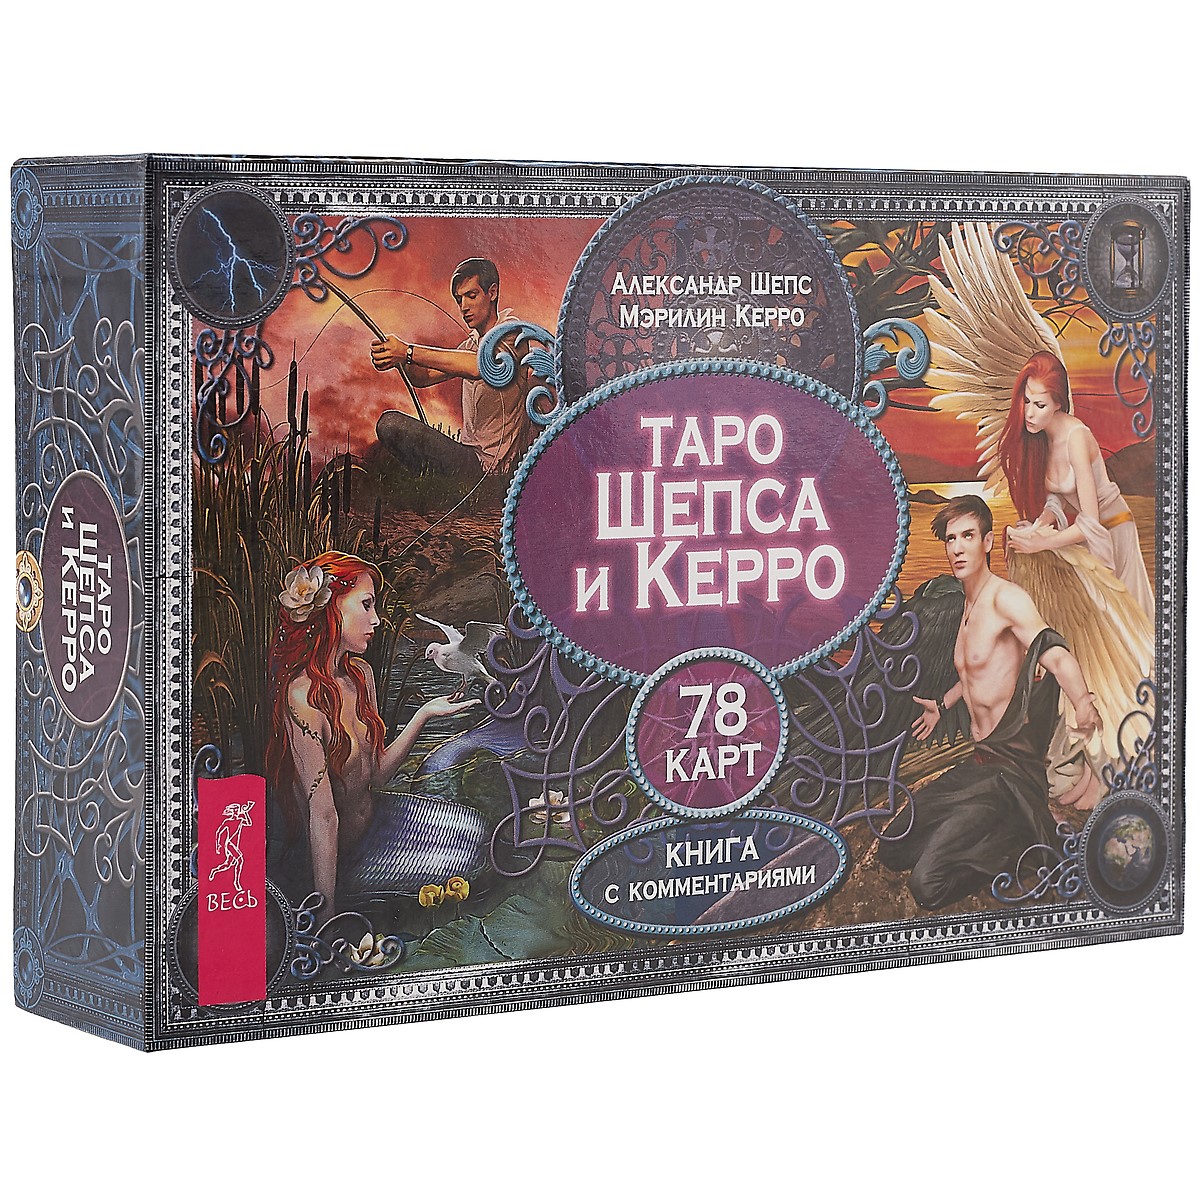 Шепс Александр - Таро Шепса и Керро (брошюра + 78 карт в подарочной упаковке)